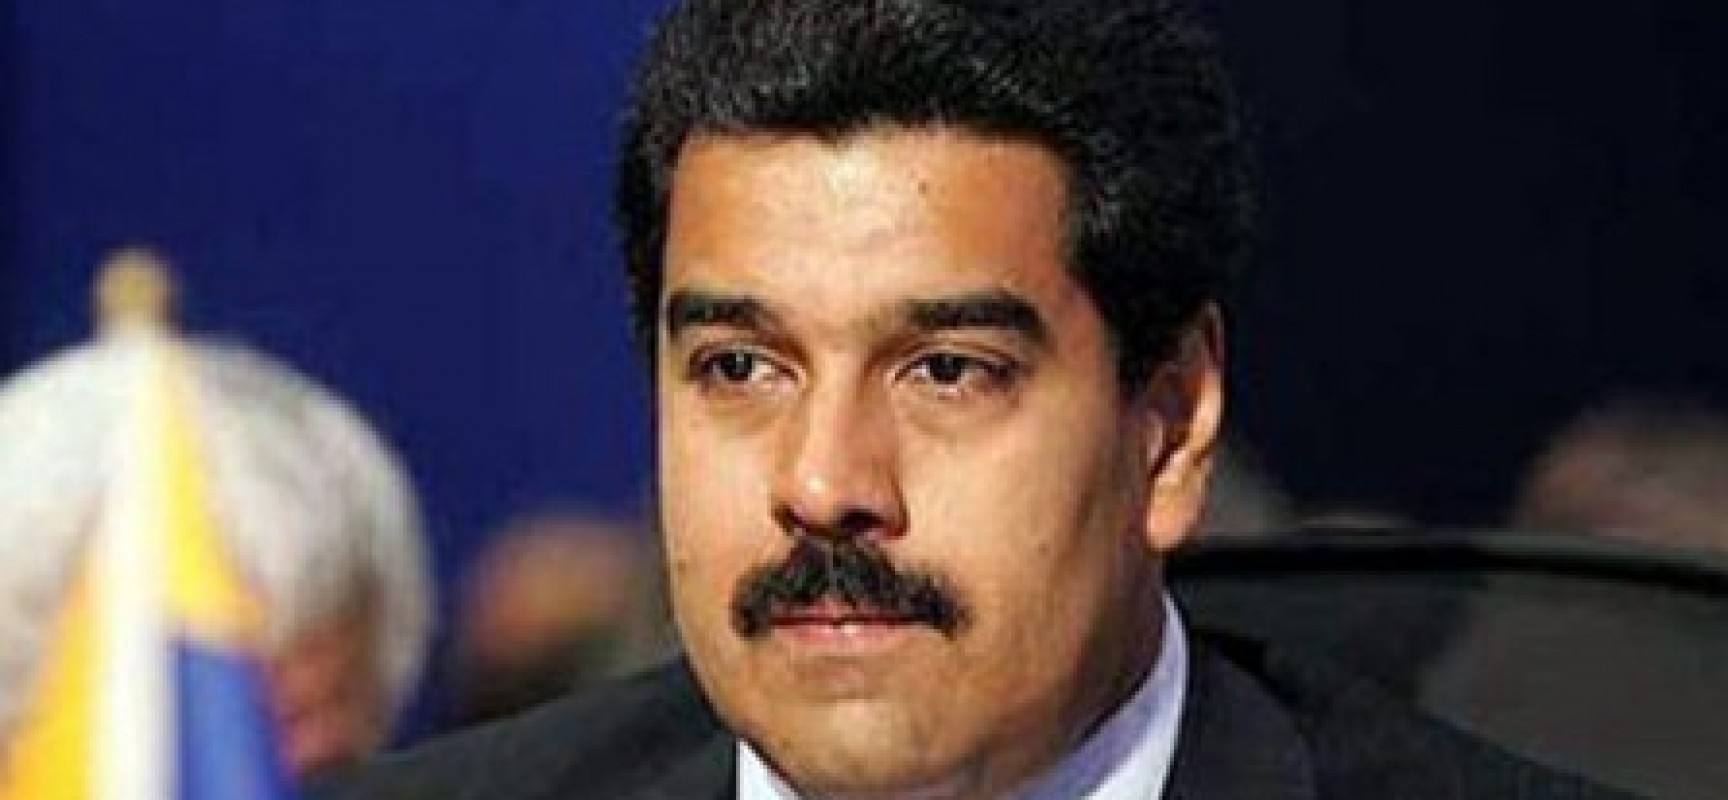 Grupo de Lima recomenda restrições às negociações com regime de Maduro